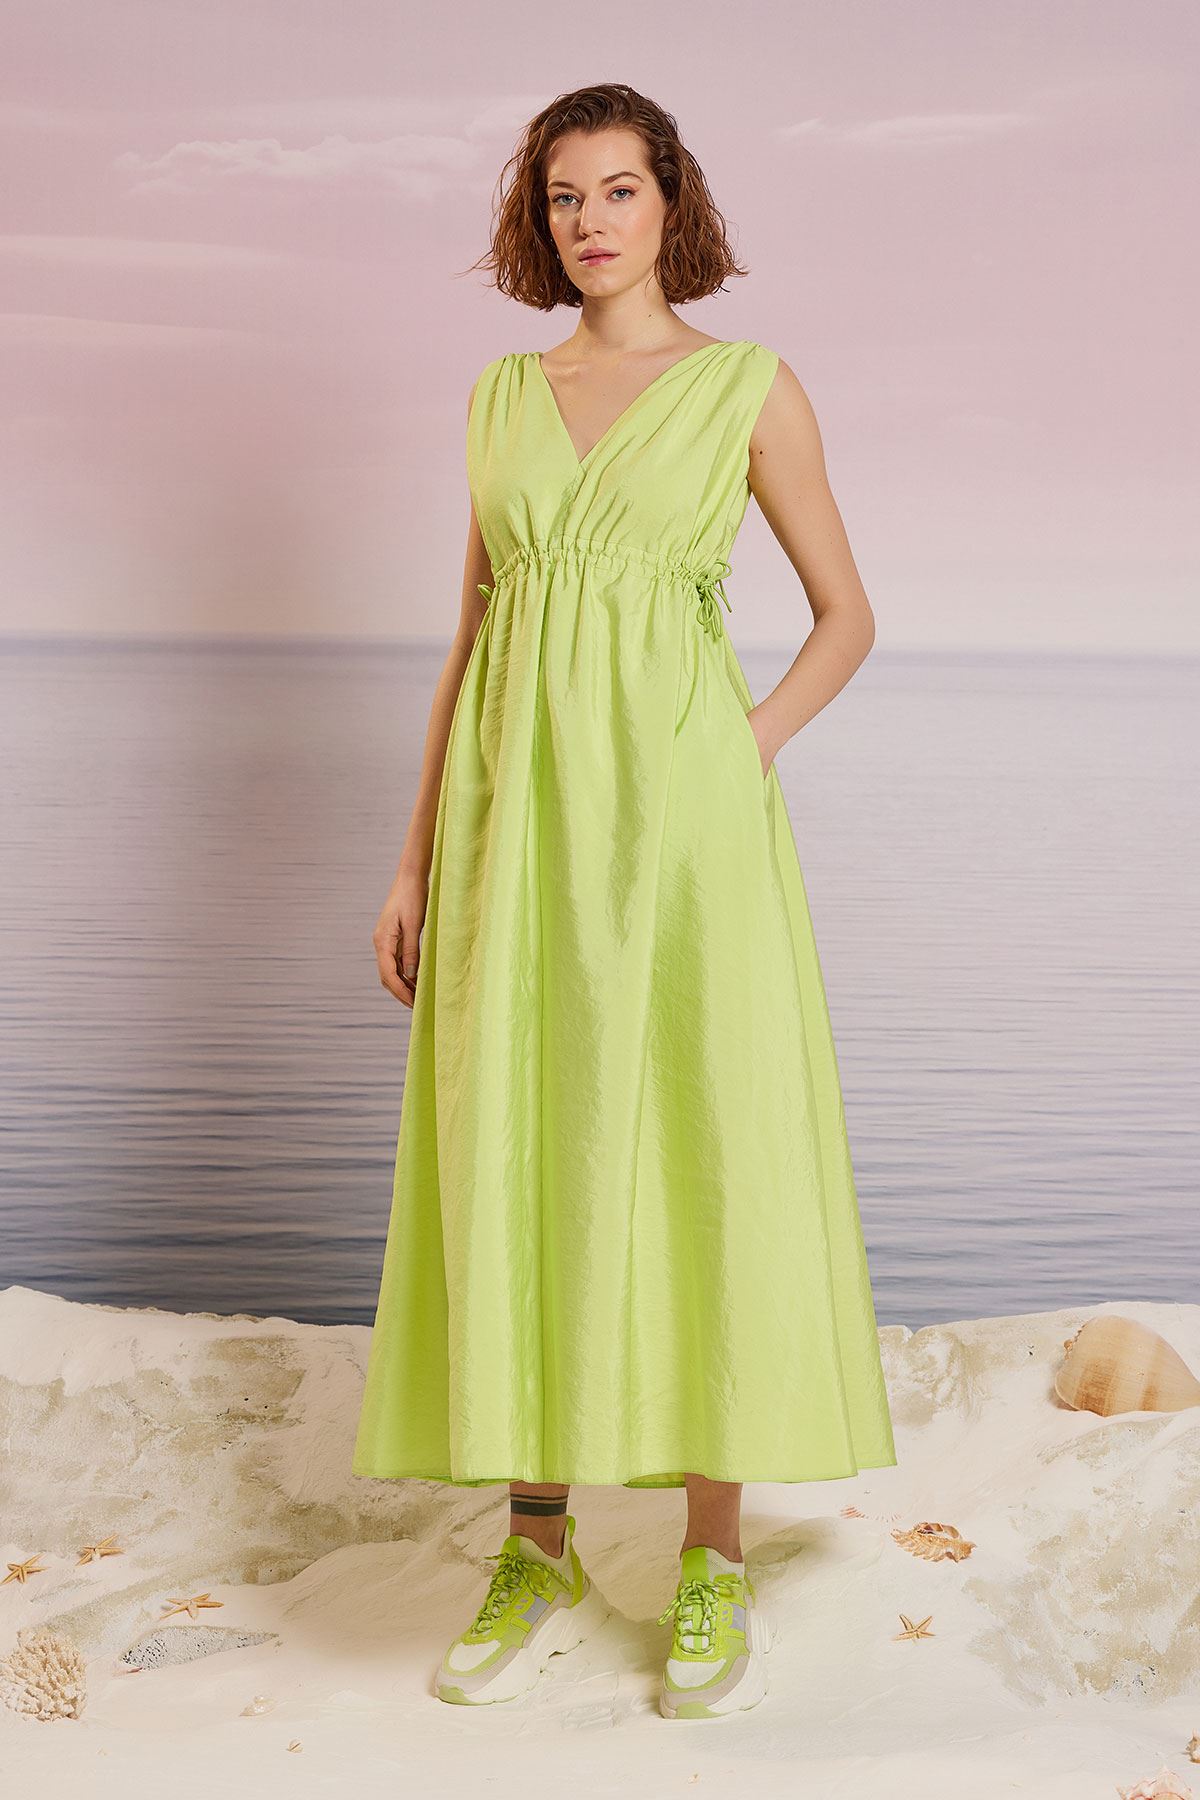 Büzgülü Maxi Elbise Fıstık Yeşili